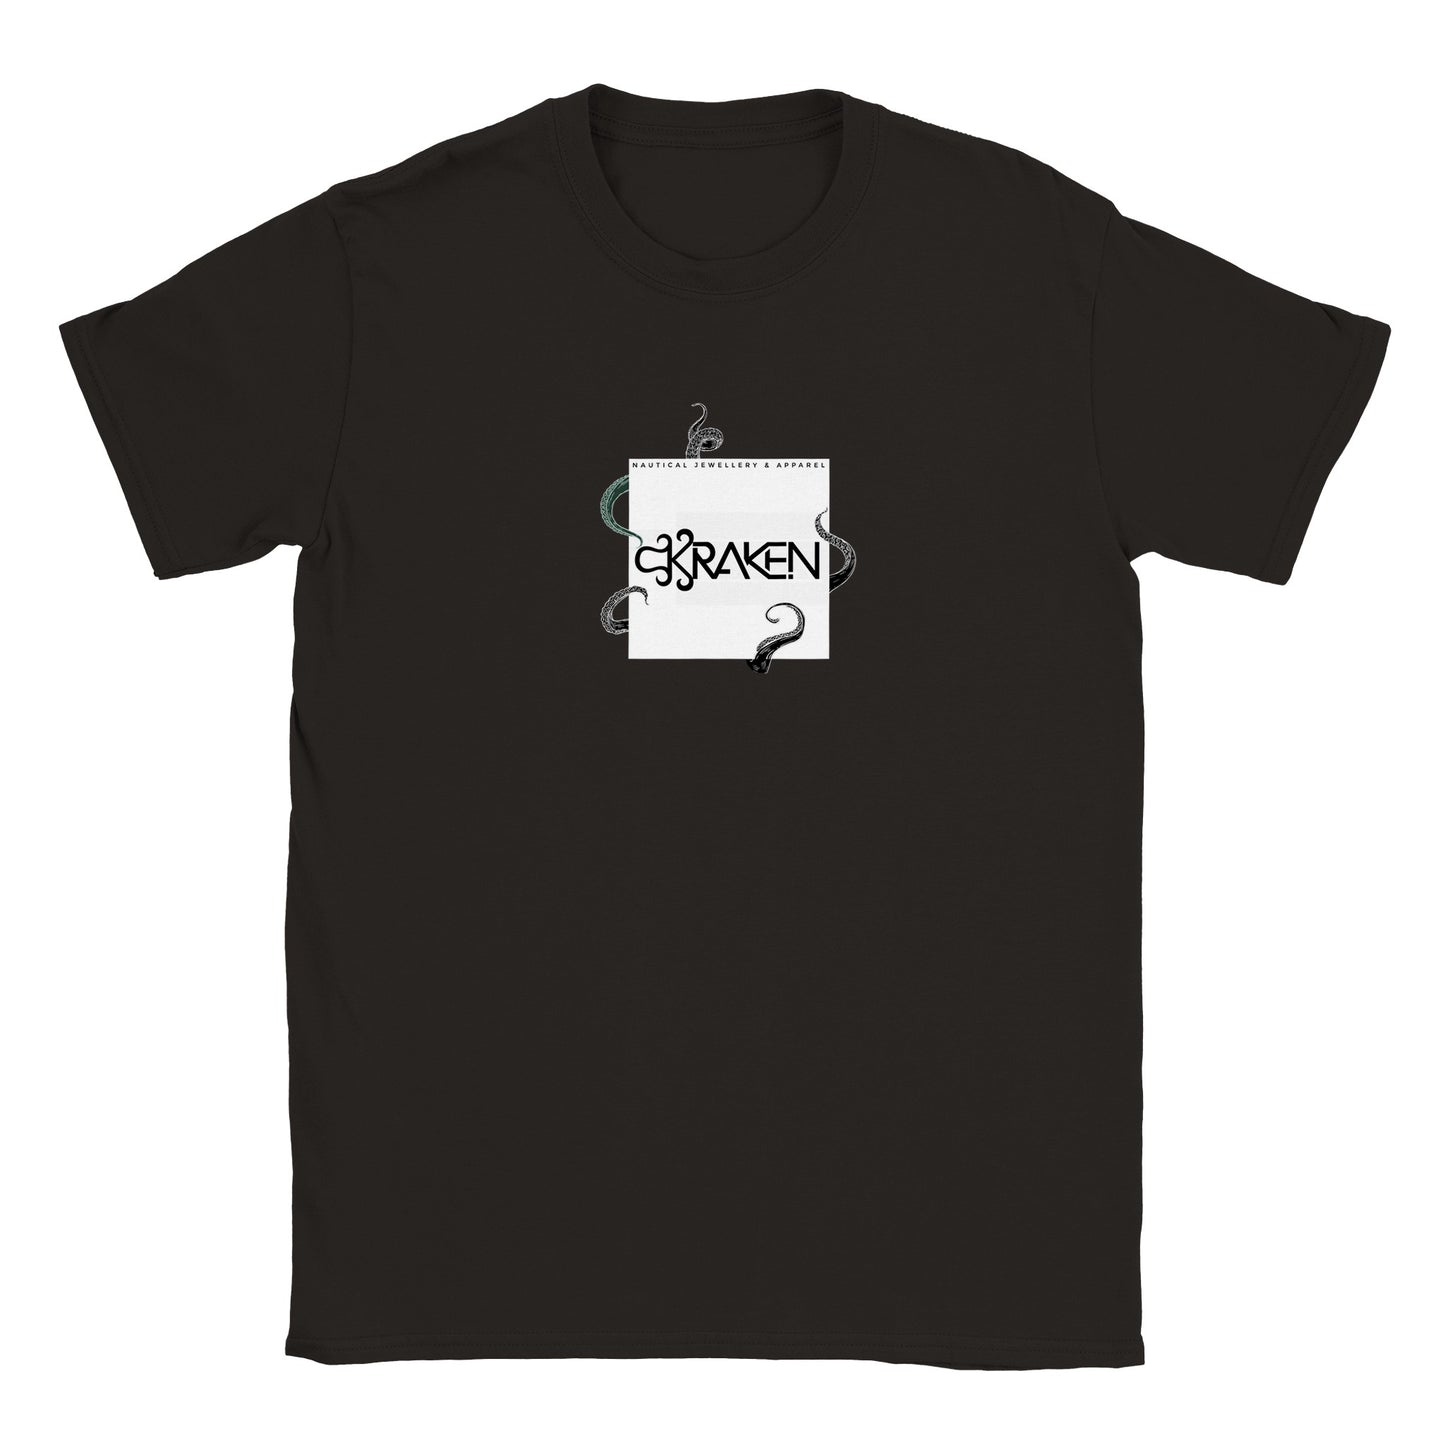 'Release the Kraken' T-shirt